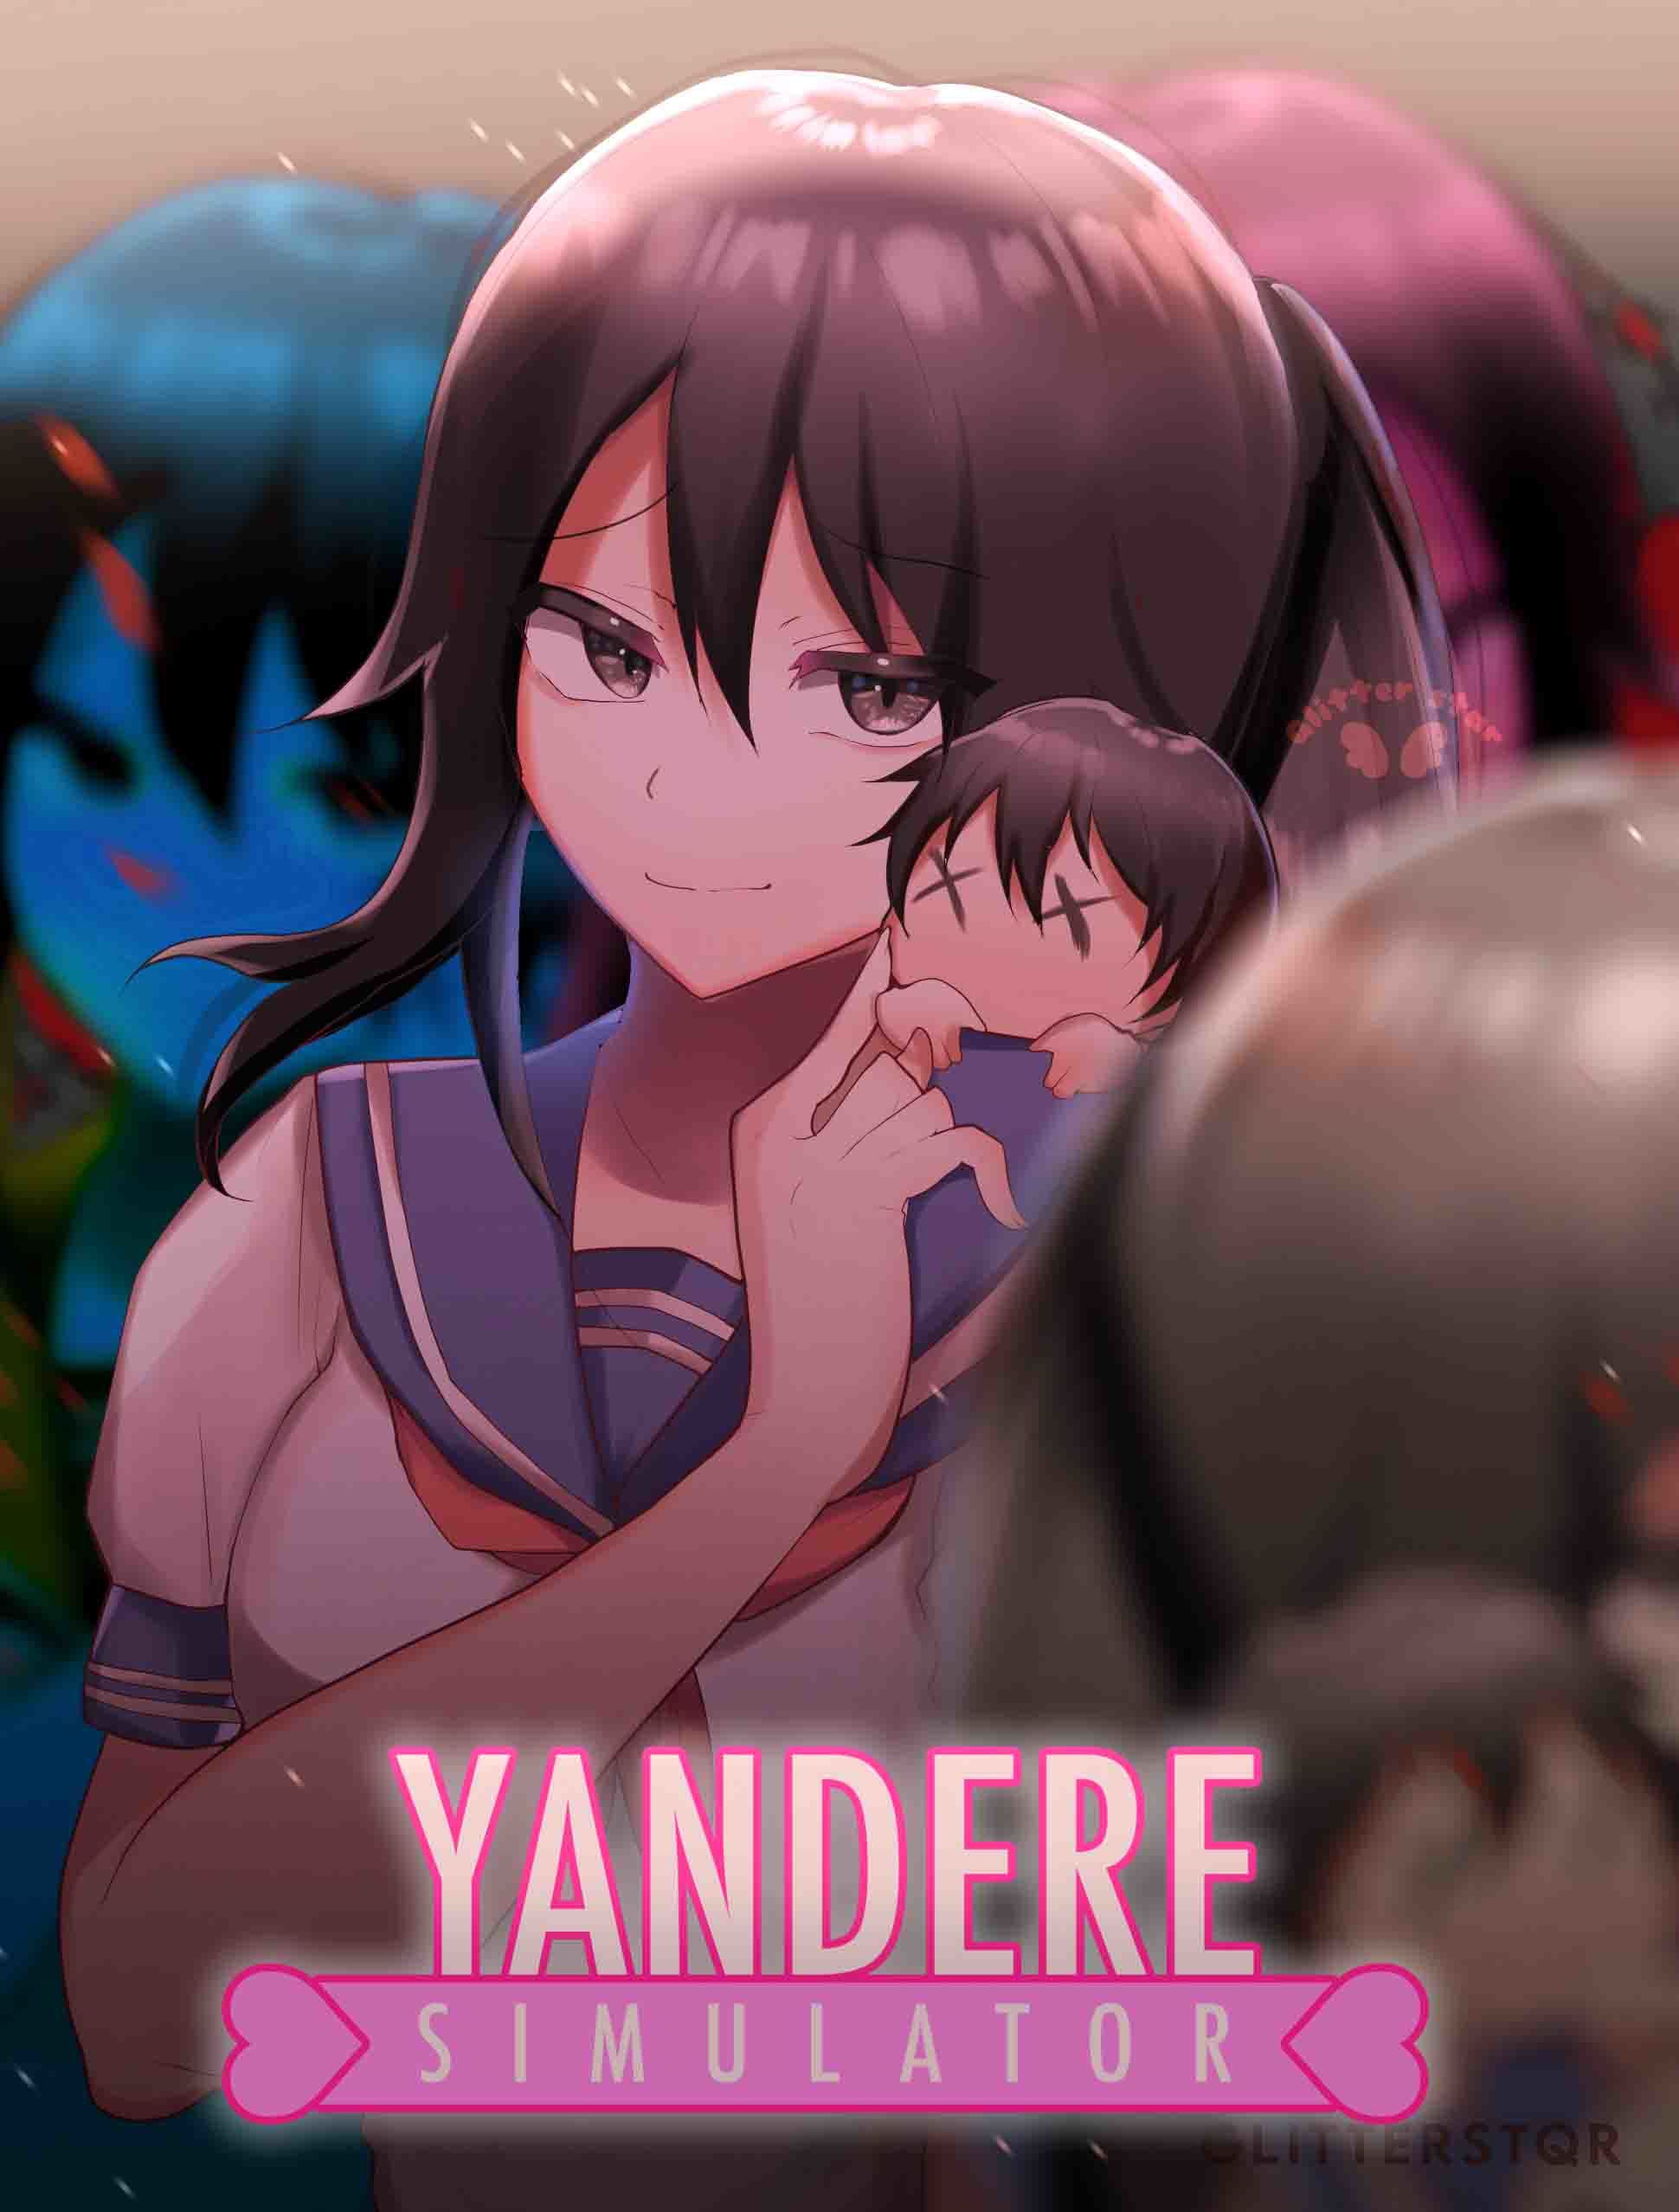 yandere simulator full game free download